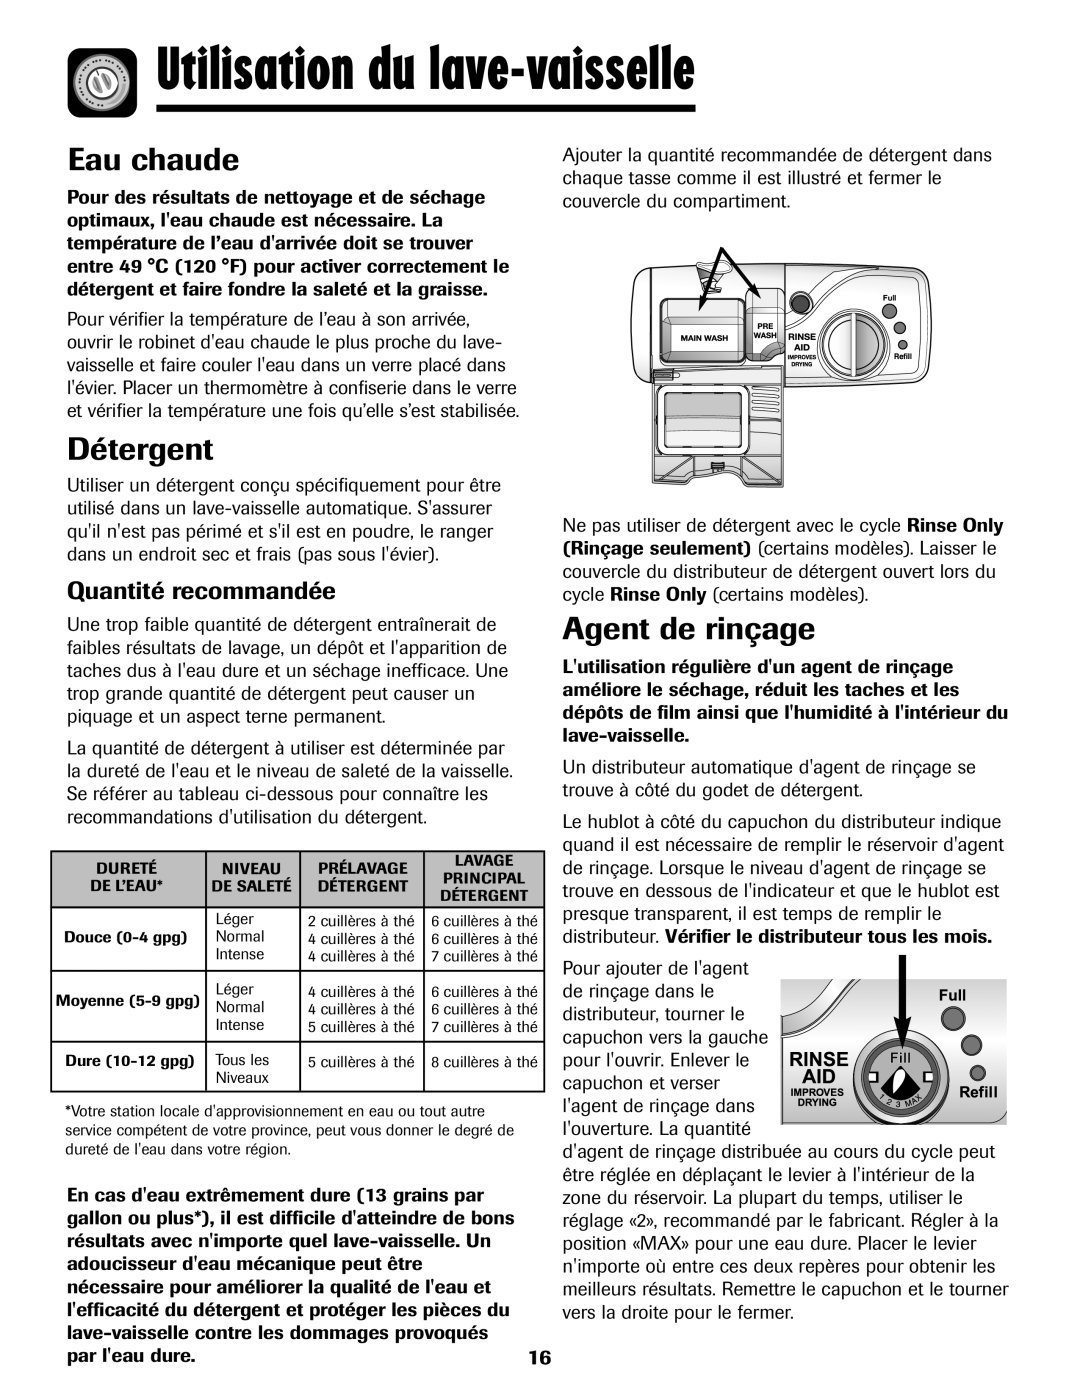 Maytag MDB-7 warranty Utilisation du lave-vaisselle, Eau chaude, Détergent, Agent de rinçage, Quantité recommandée 